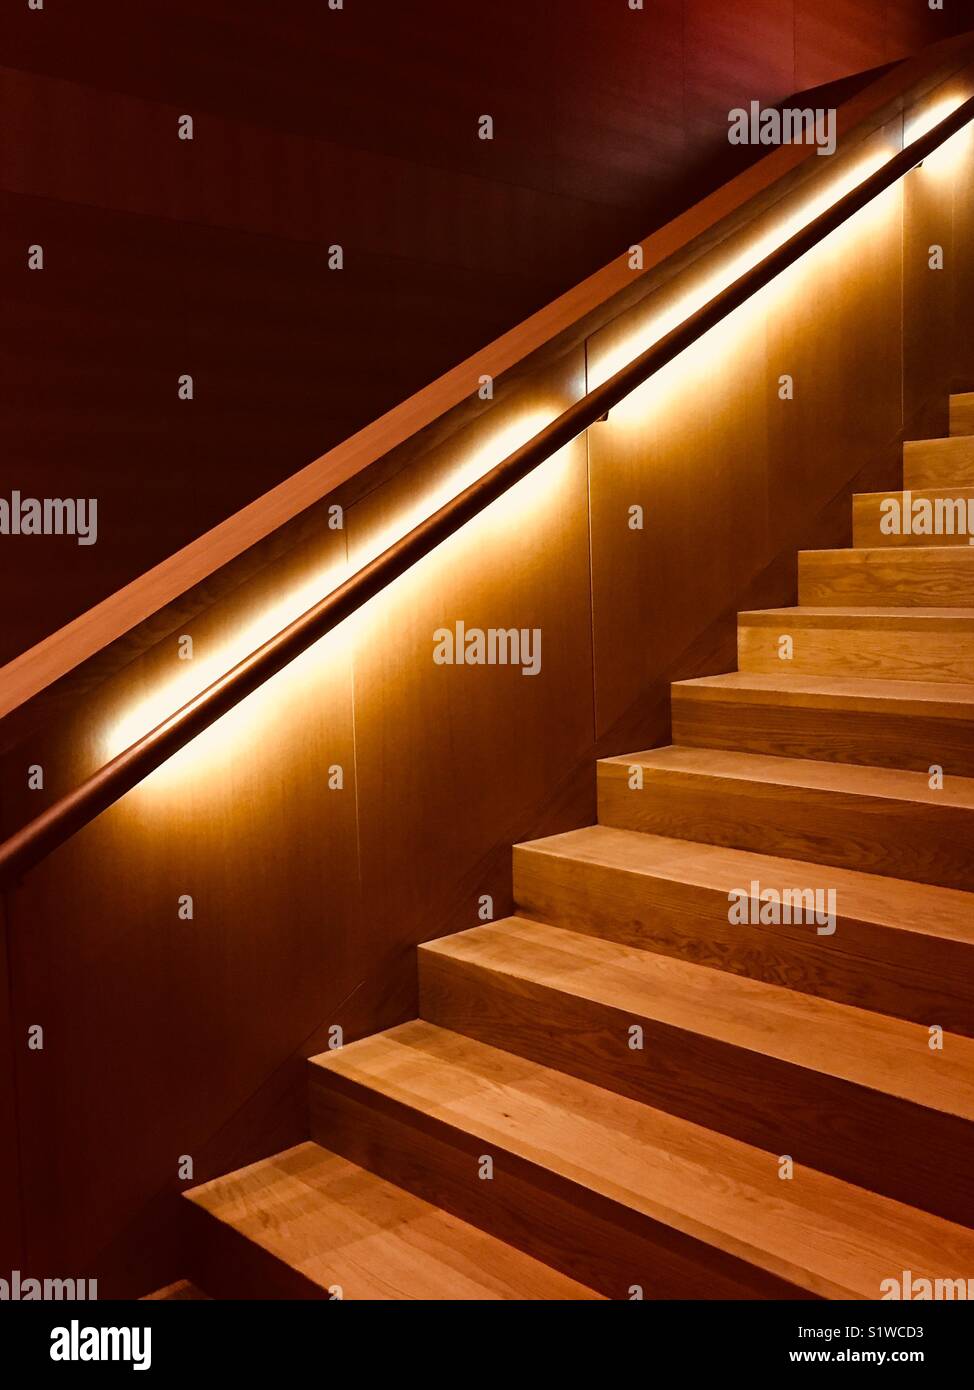 Escalier en bois avec rampe lumineuse. Escalier en chêne brun-rougeâtre. Banque D'Images